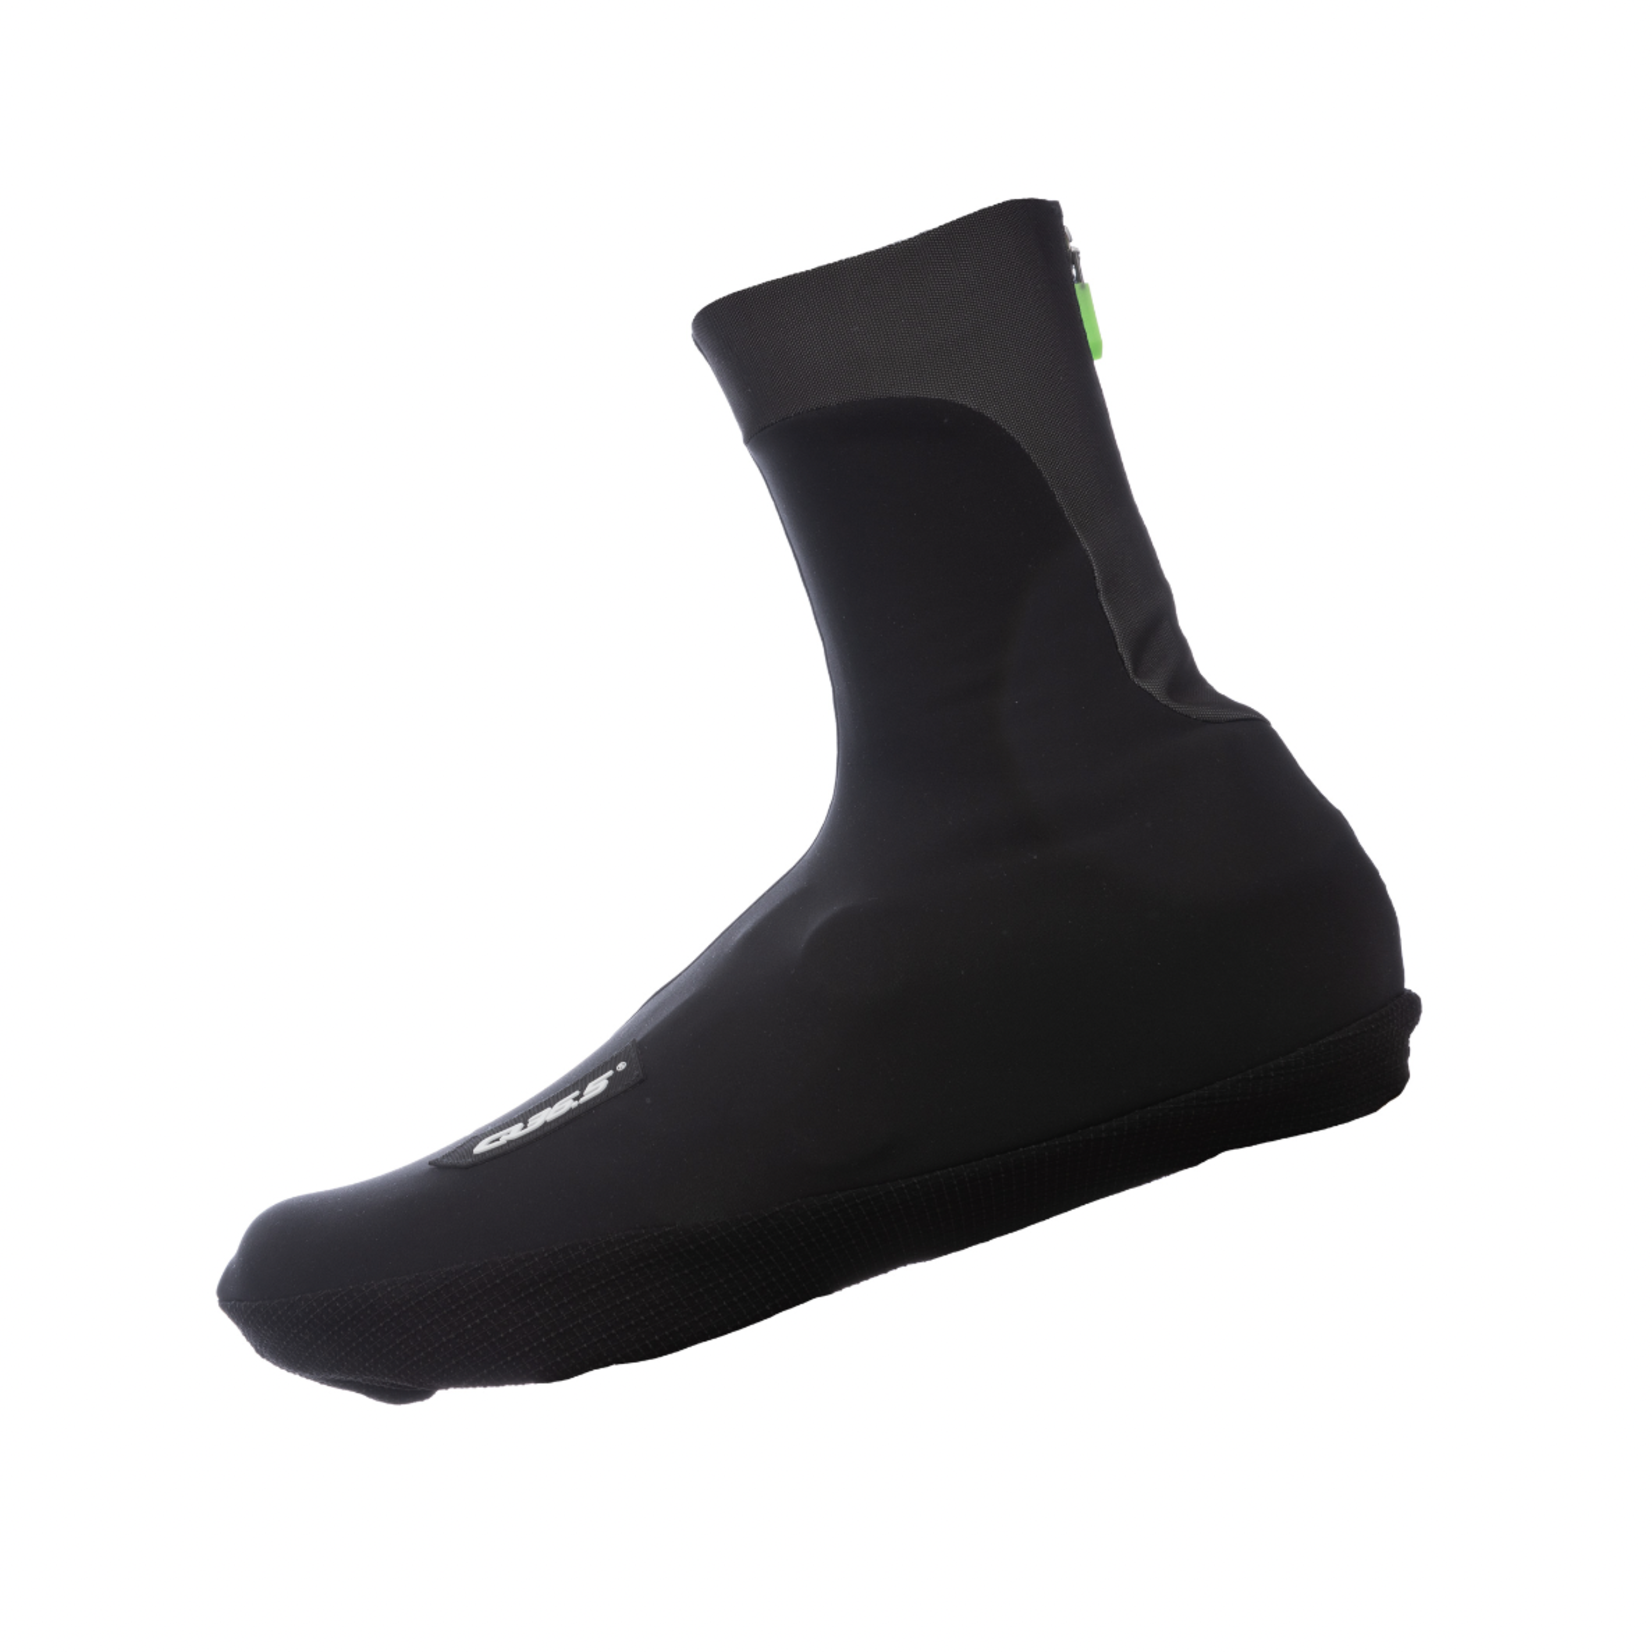 Q36.5 Q36.5 Termico Overshoes - Black